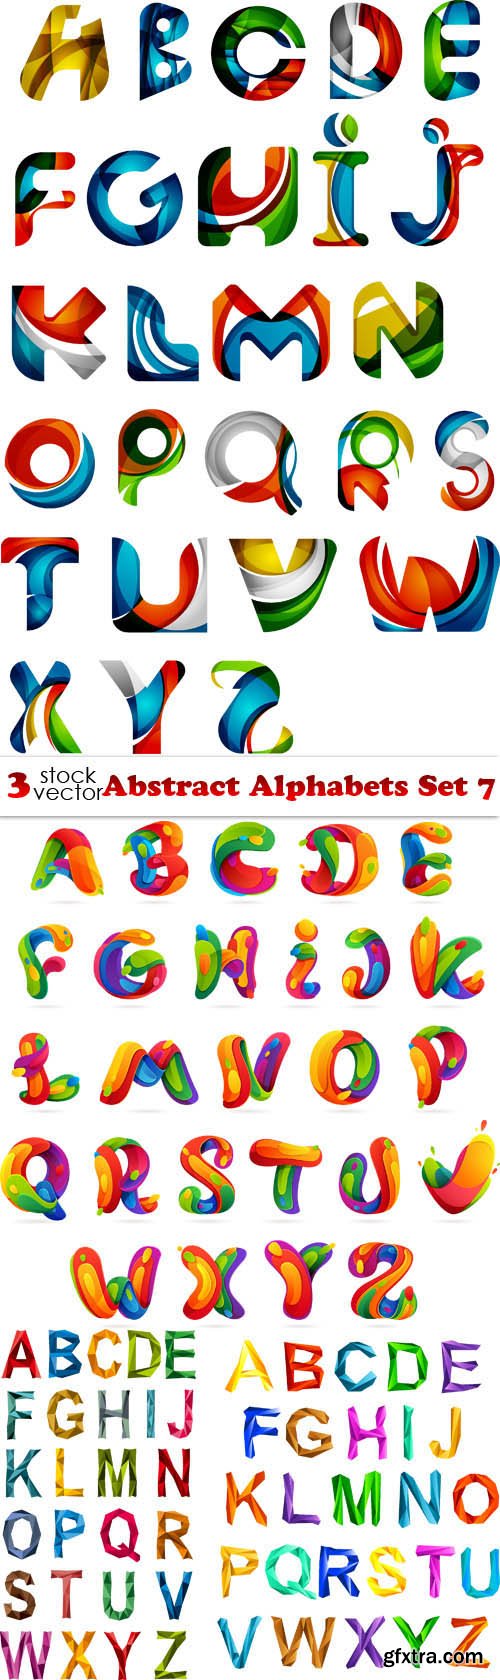 Vectors - Abstract Alphabets Set 7